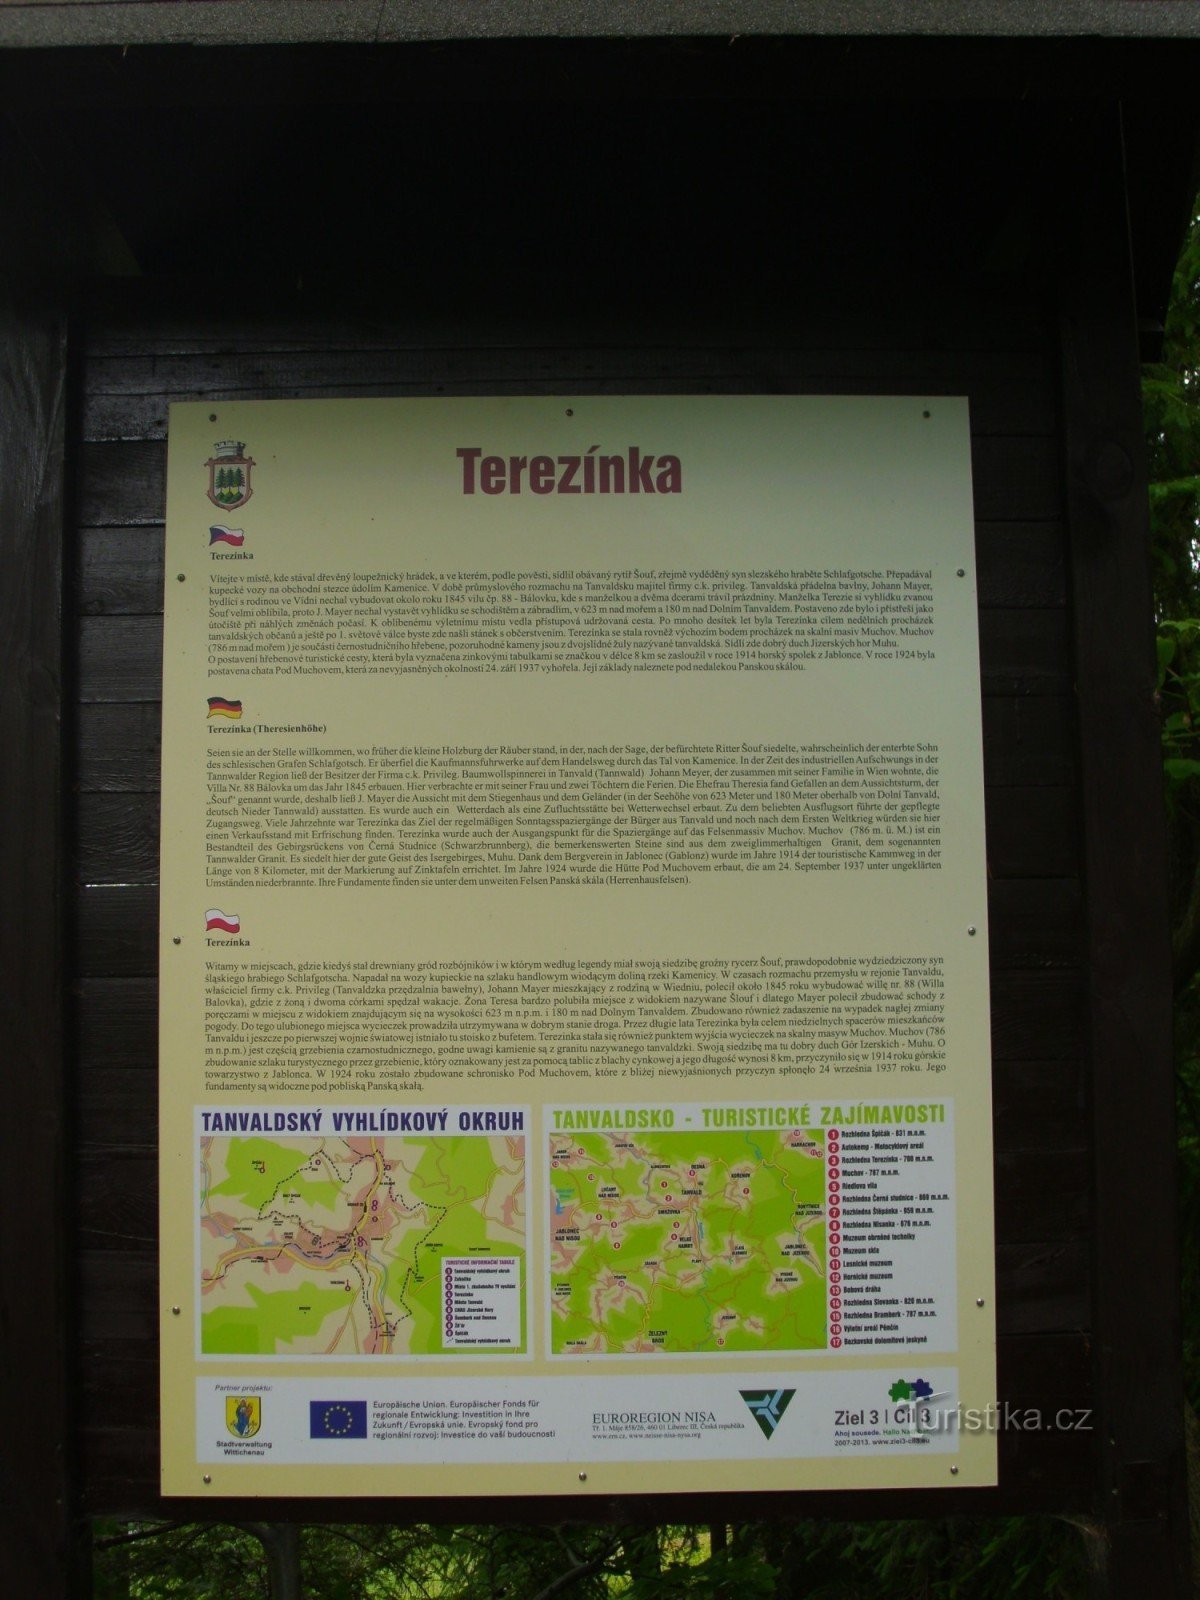 Nói về Terezín